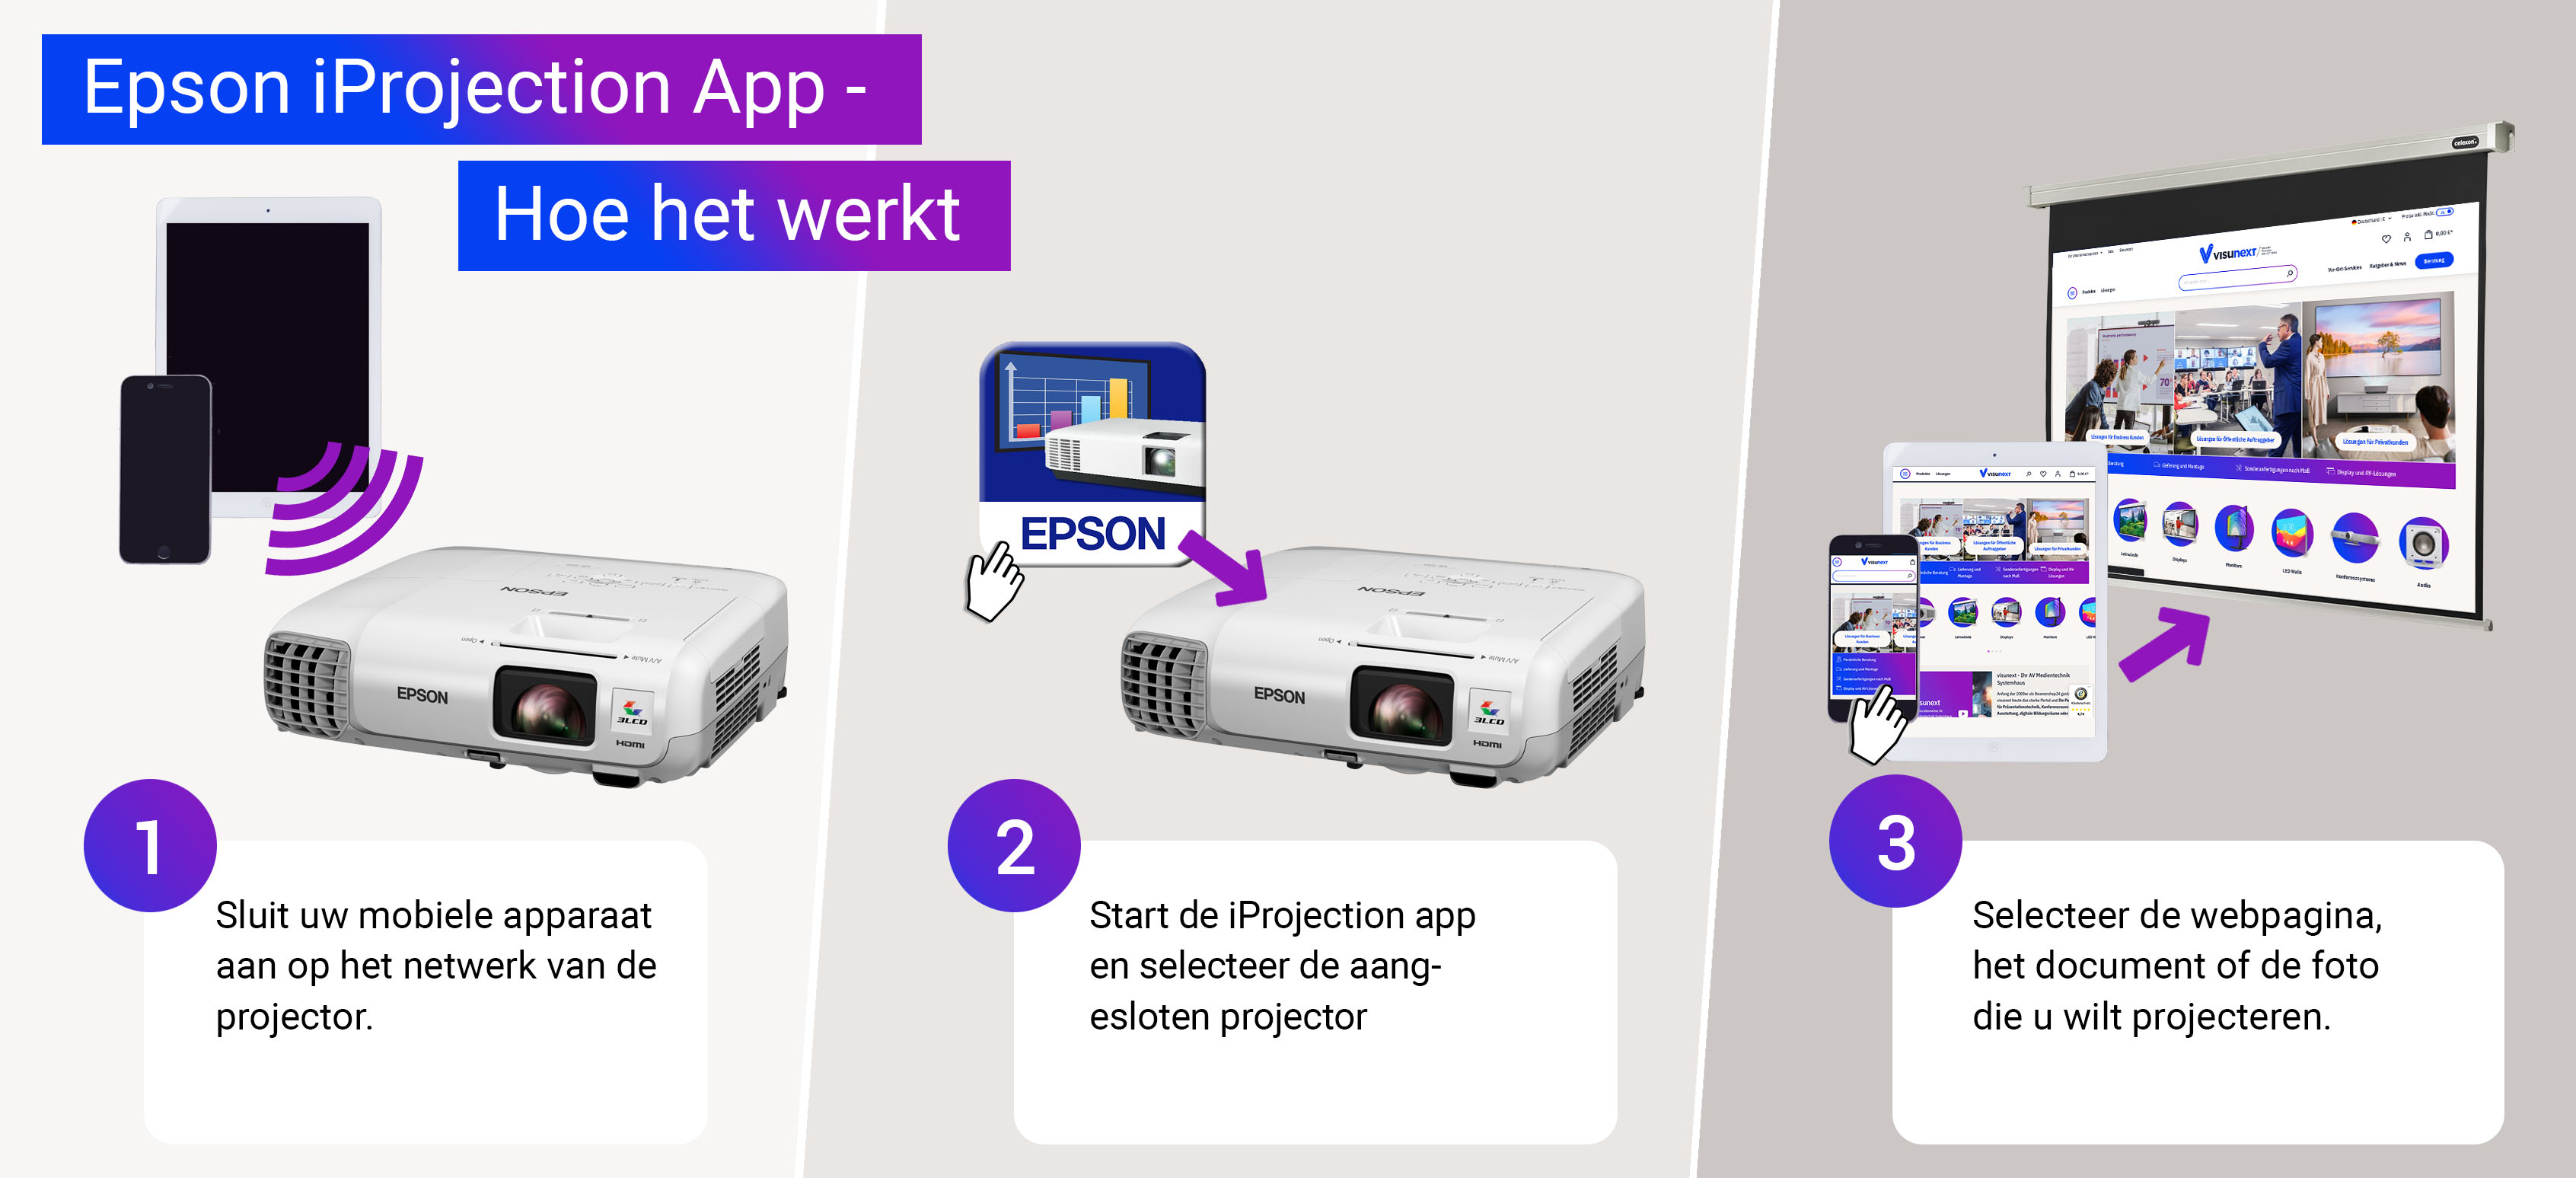 Epson iProjection App - Hoe het werkt